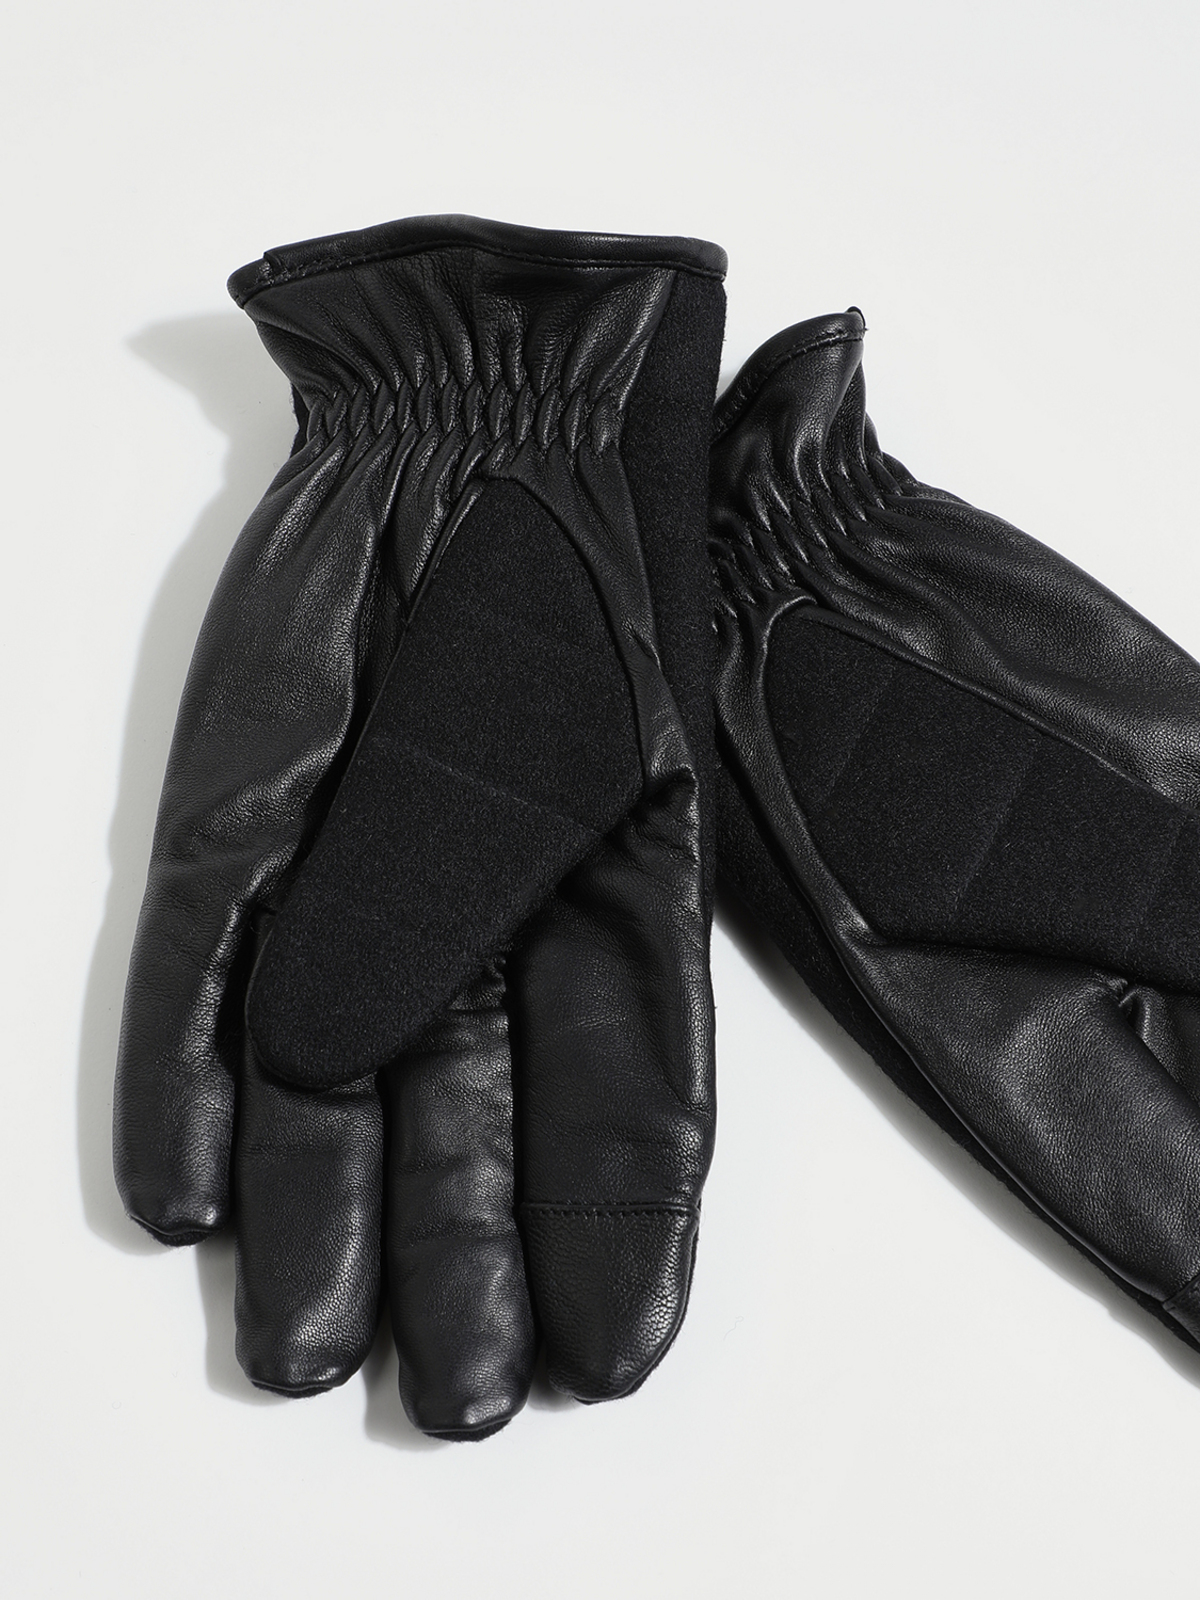 Esprit gants noir homme